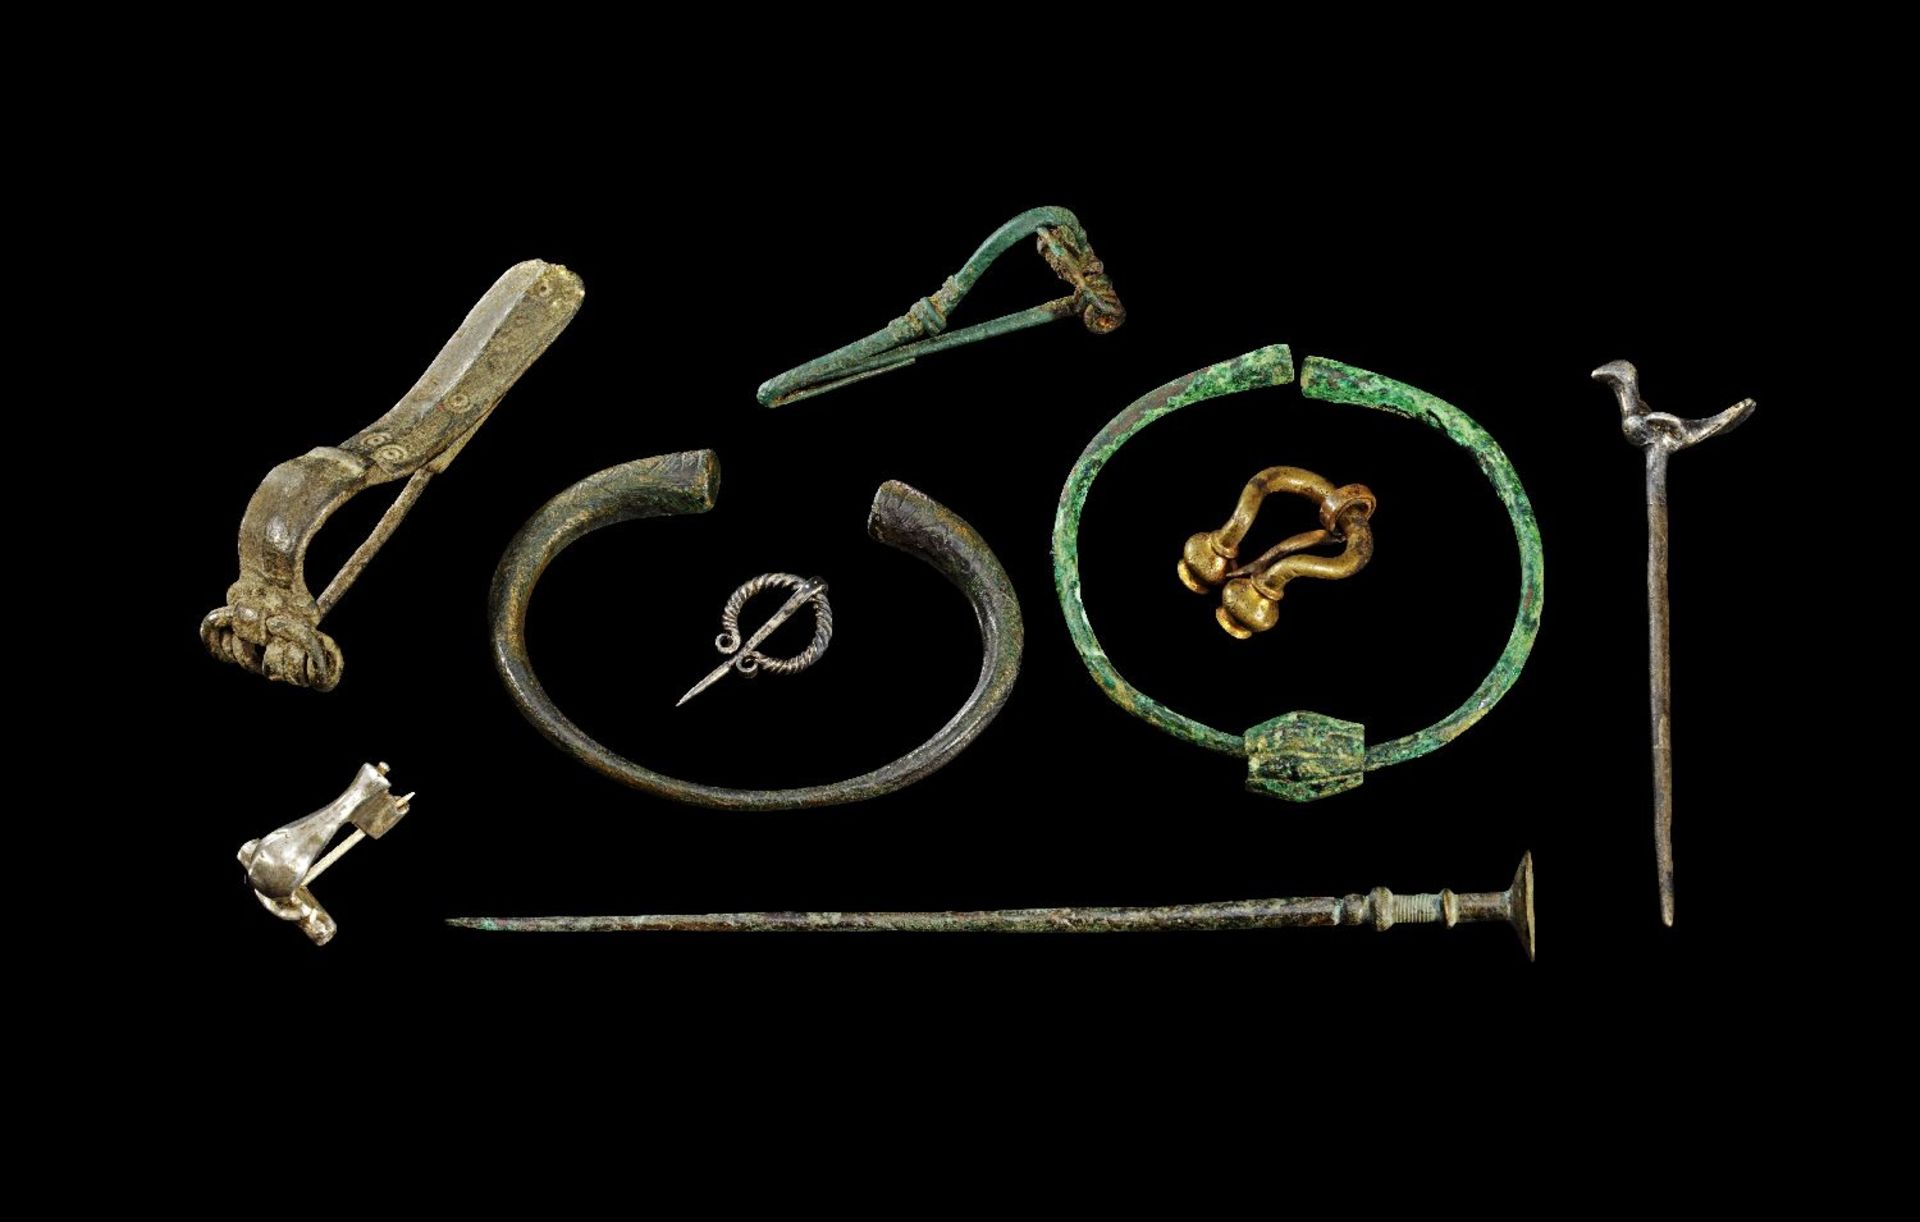 Sammlung Silber- und Bronzeschmuck. Bronzezeit, 14 Jh. v. Chr. - Frühmittelalter, 13. Jh. n. Chr.